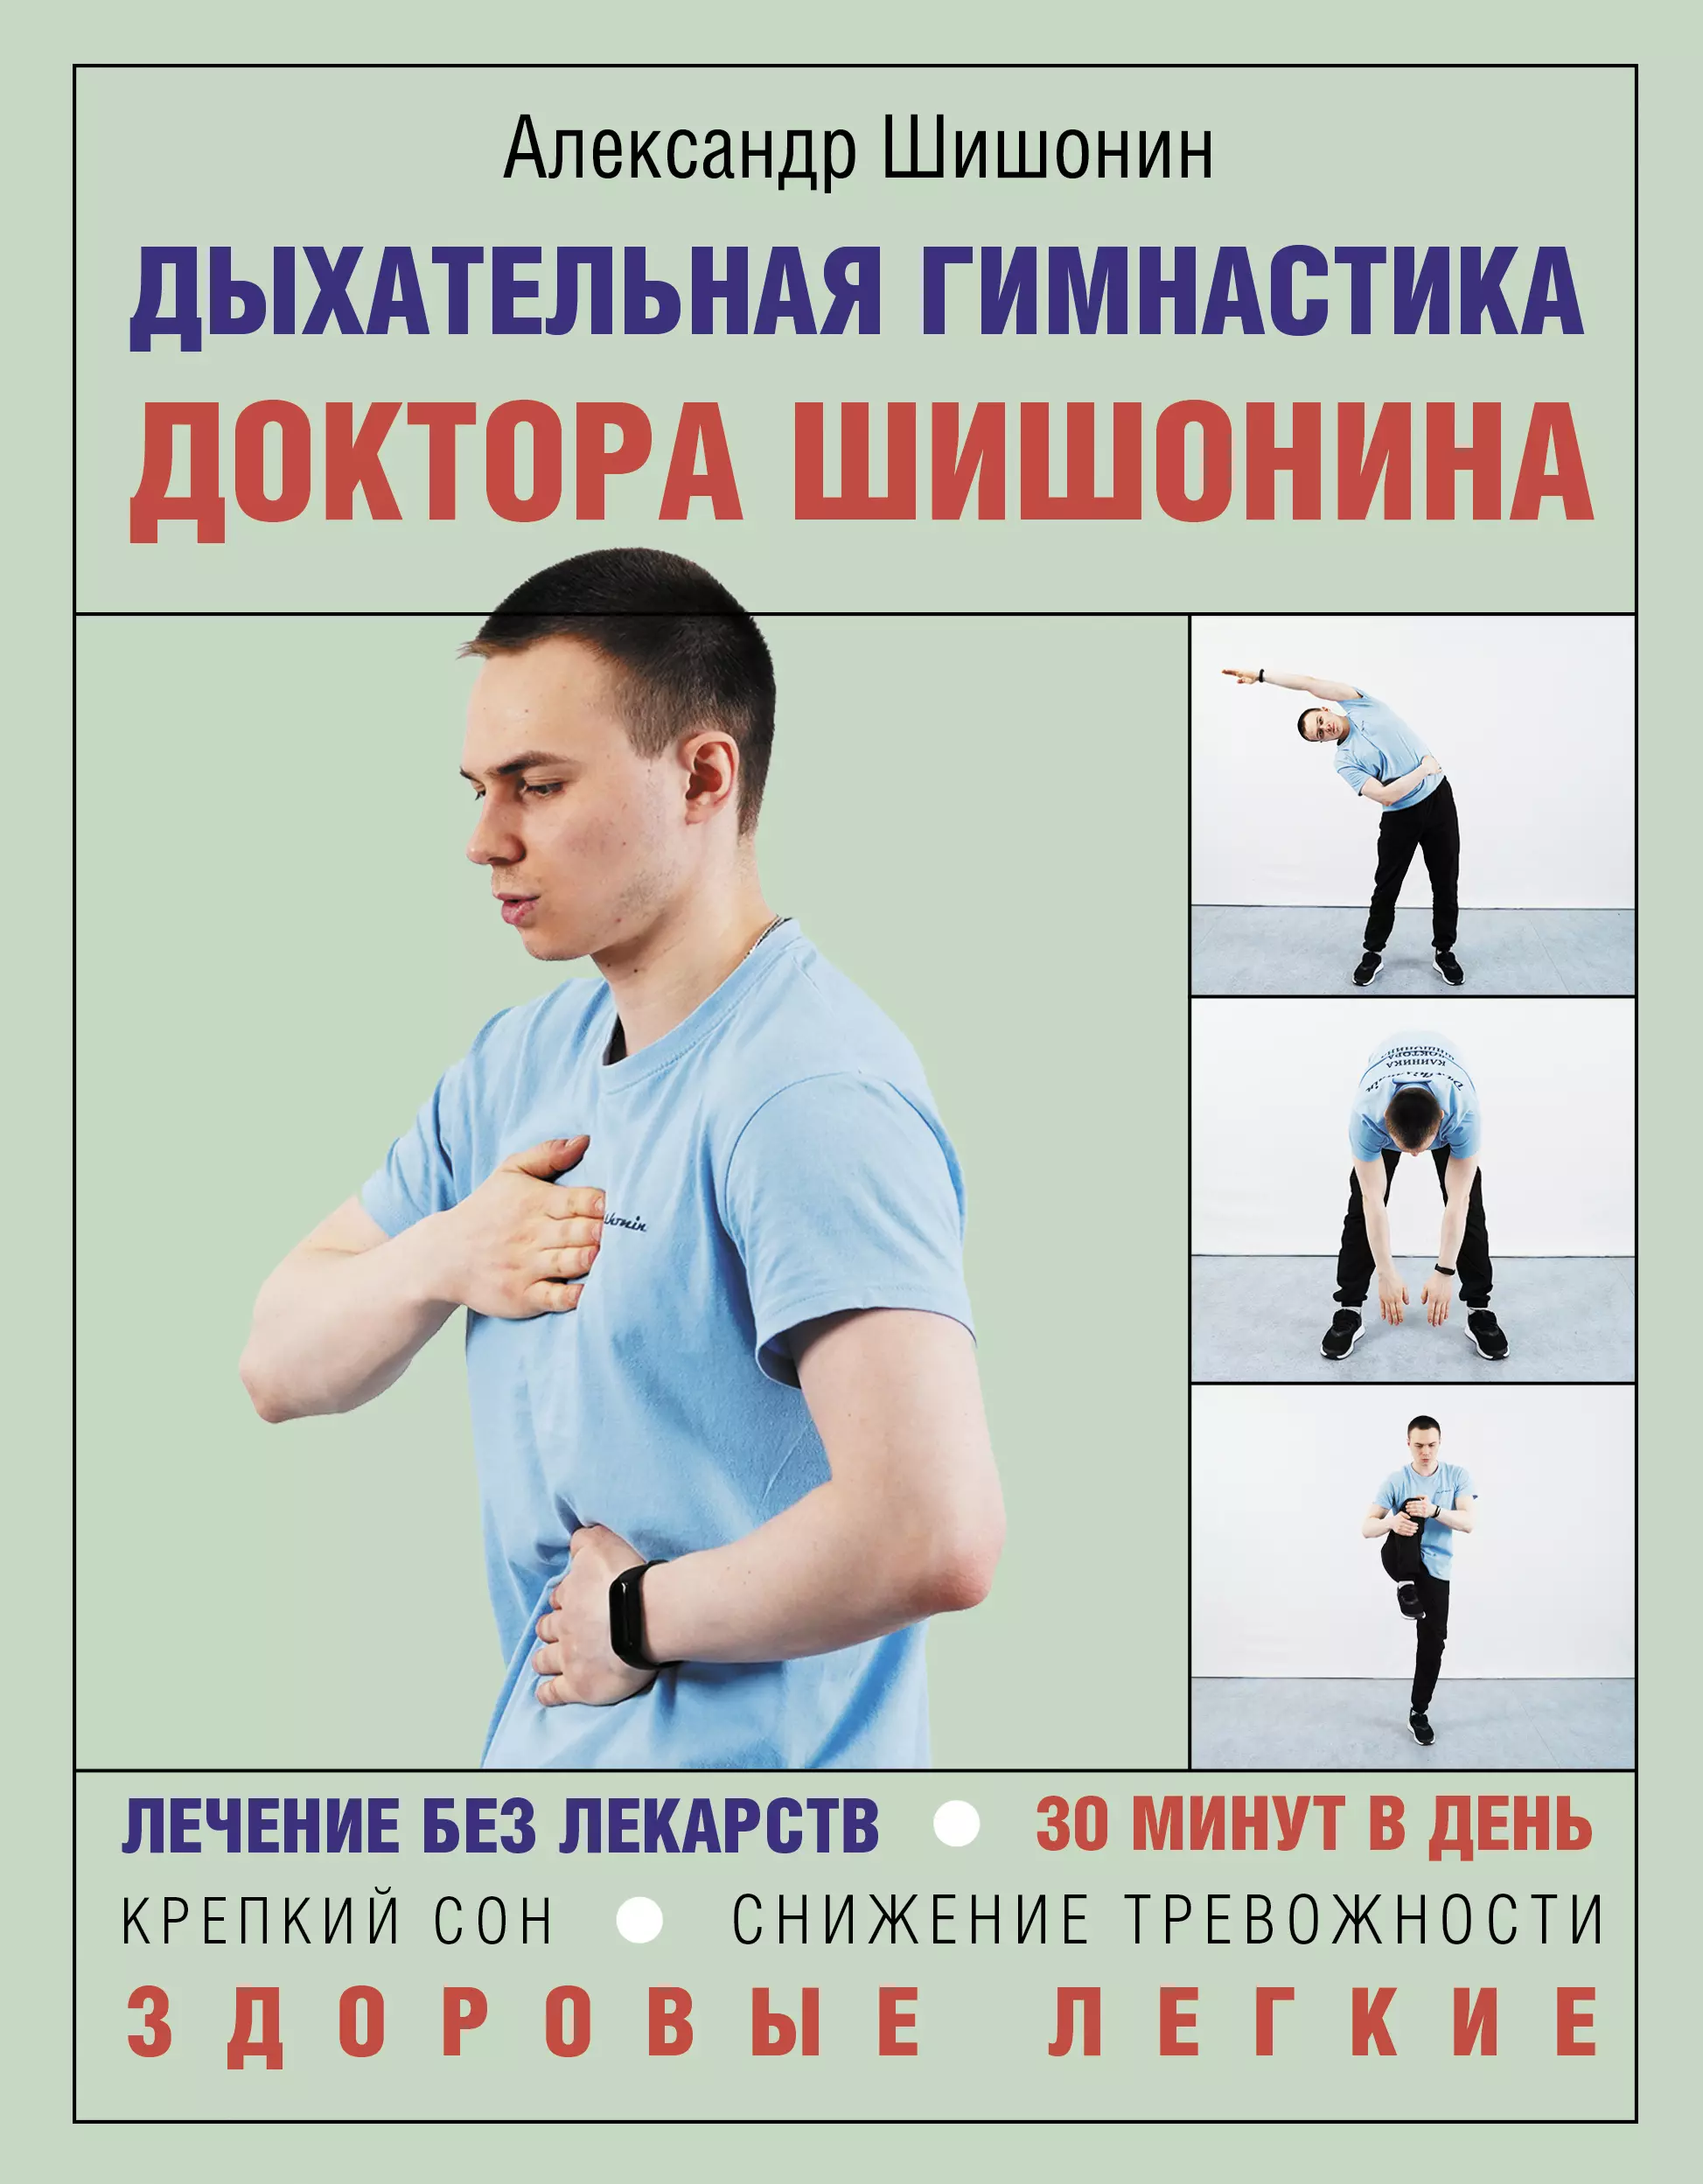 Дыхательная гимнастика доктора Шишонина шишонин александр юрьевич лекарство от всех болезней как активировать скрытые резервы молодости